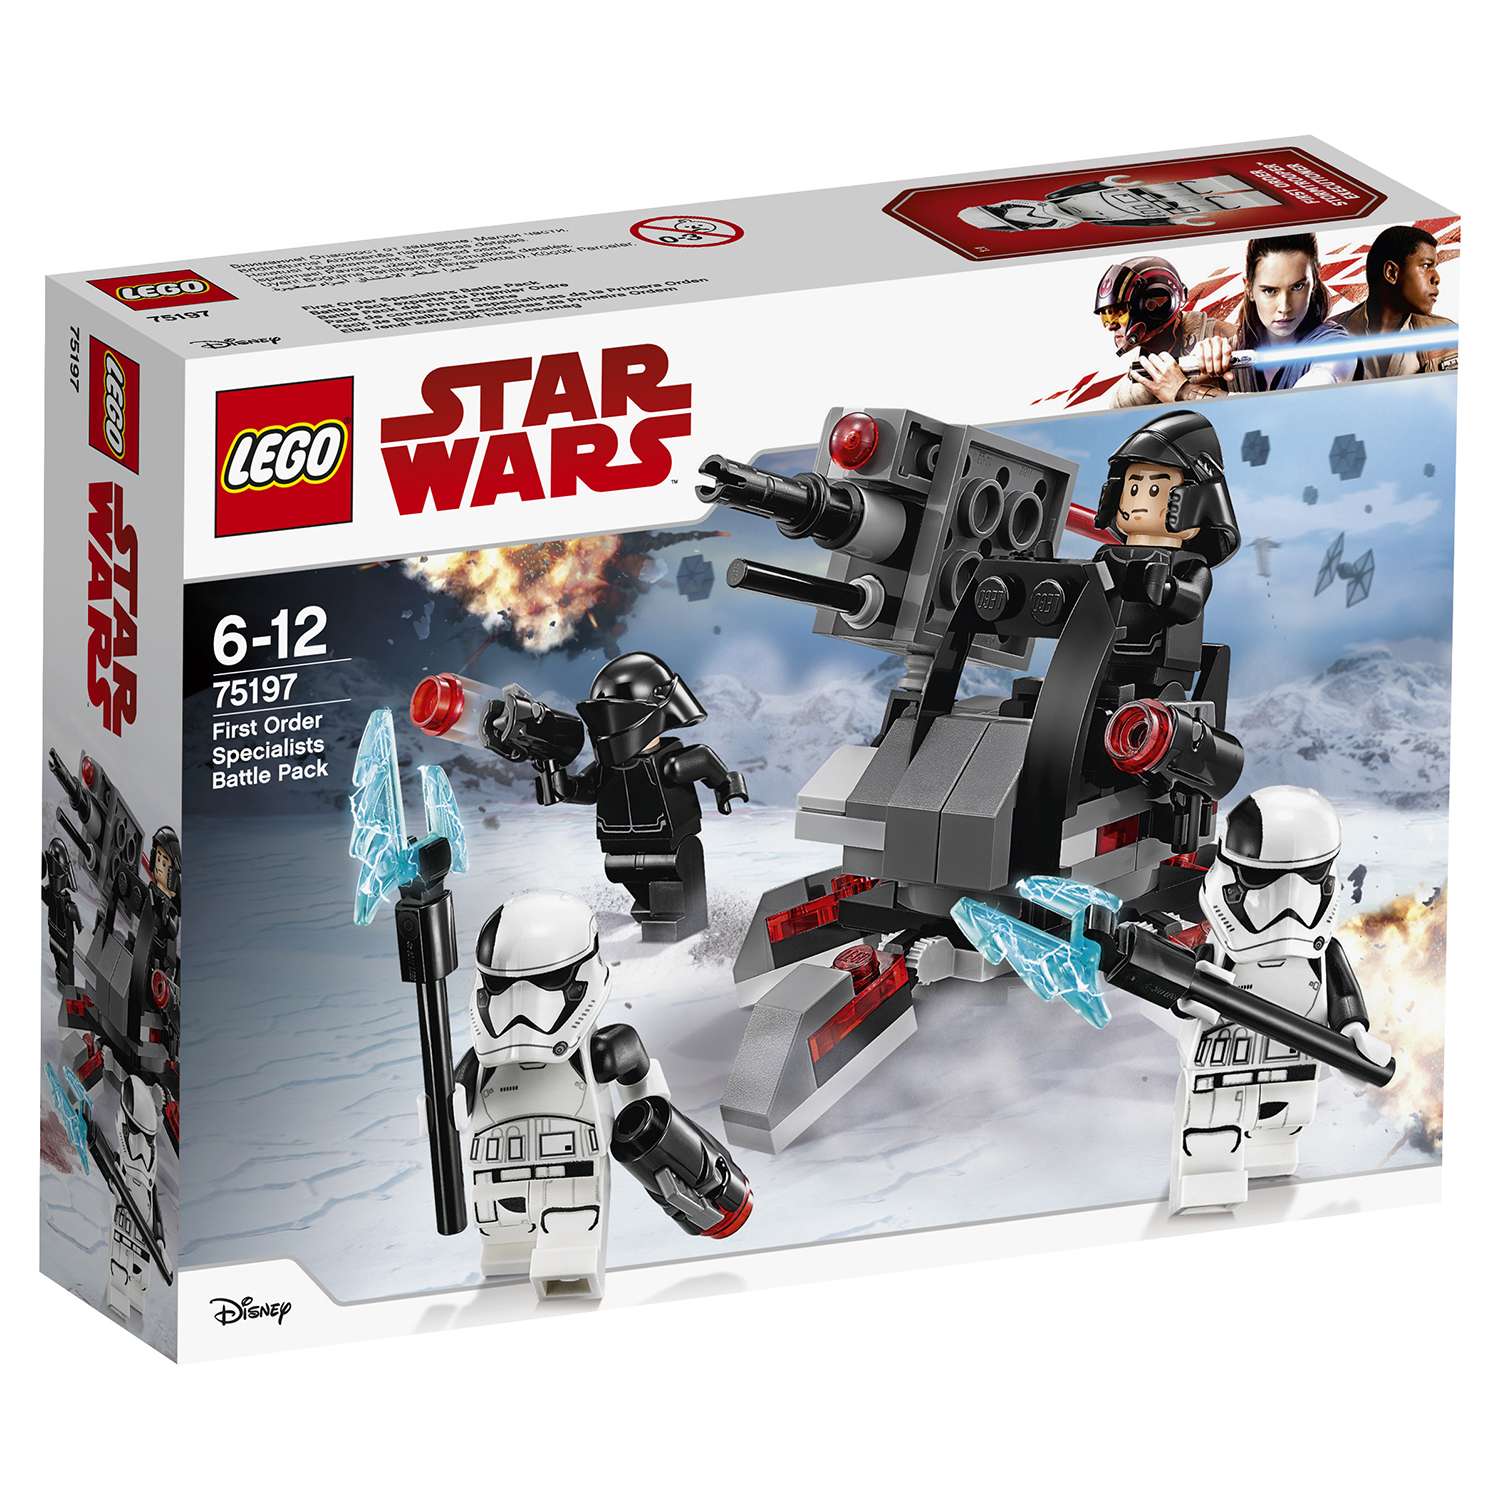 Конструктор LEGO Боевой набор специалистов Первого Ордена Star Wars TM (75197) - фото 2